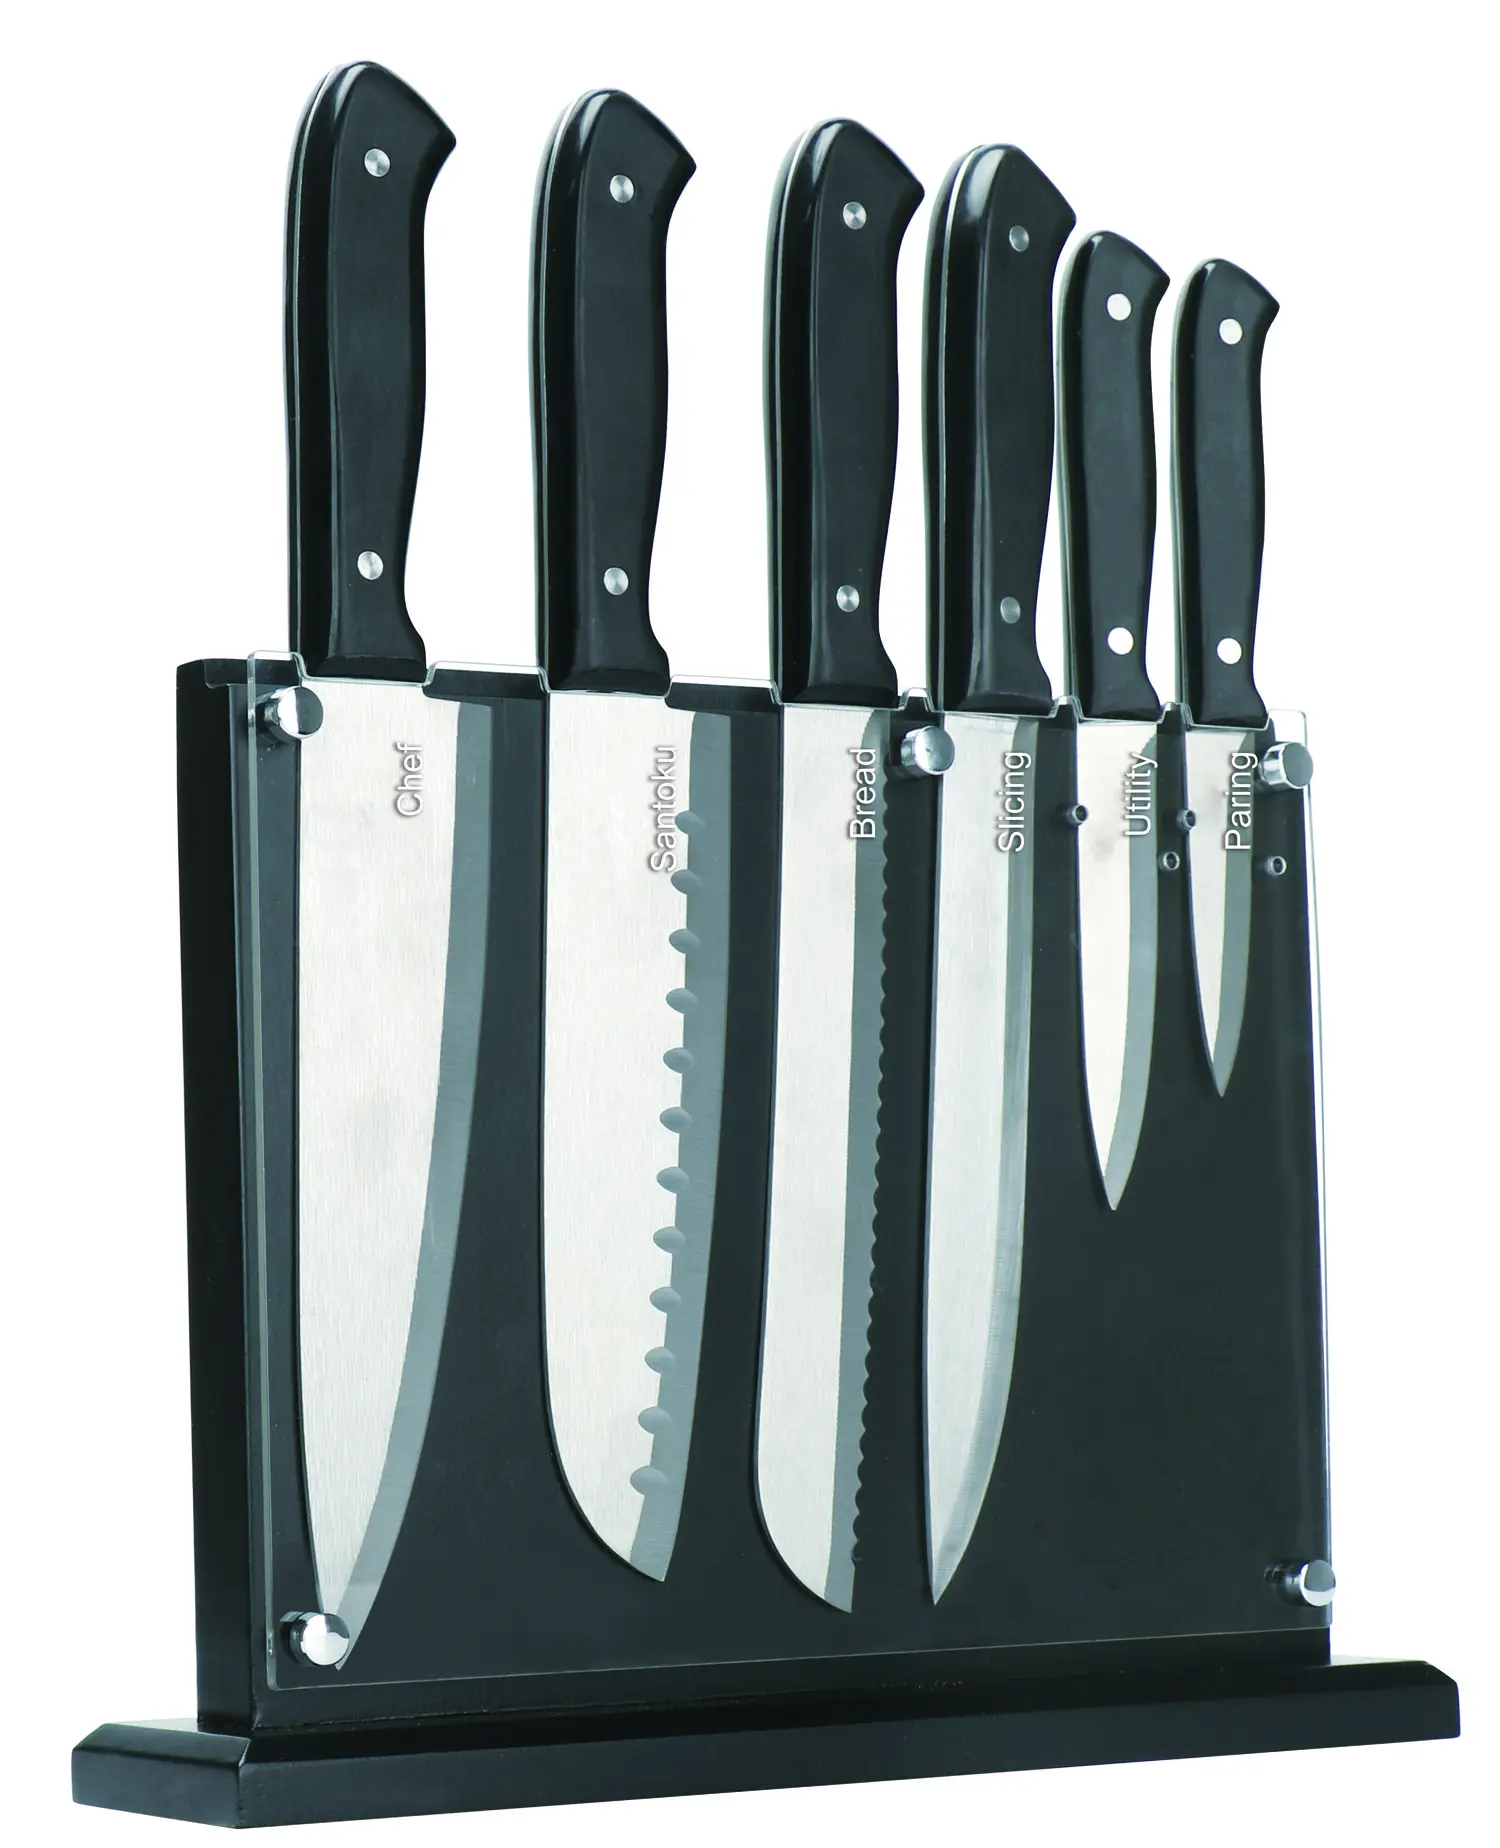 JINYU 7PC in acciaio inox pieno tang coltello Set coltello da cucina posate con blocco di legno acrilico rimovibile per una facile pulizia